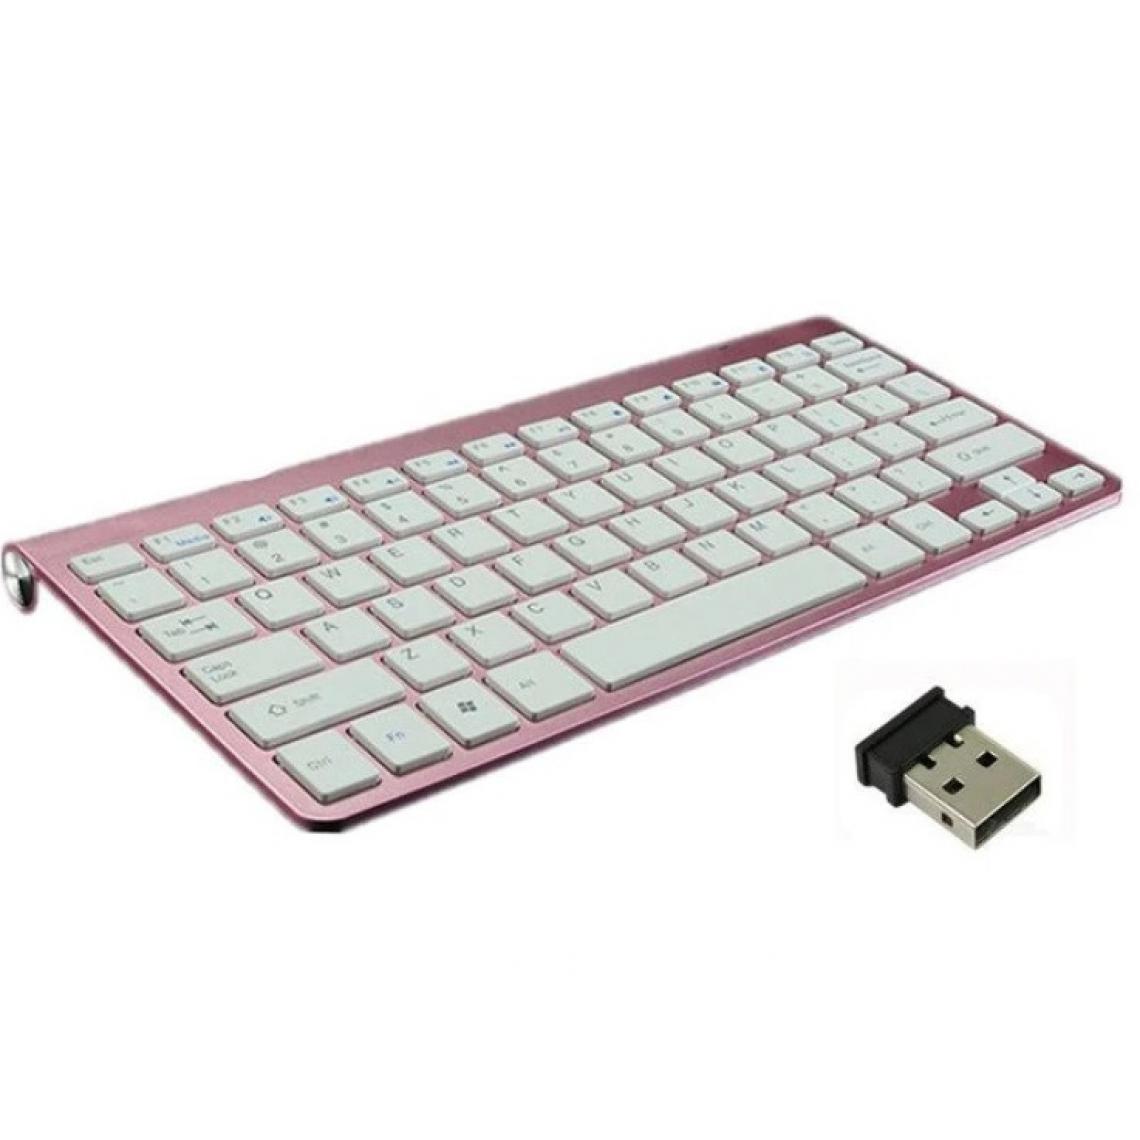 Shot - Clavier Sans Fil Metal pour PC TOSHIBA USB QWERTY Piles (ROSE) - Clavier